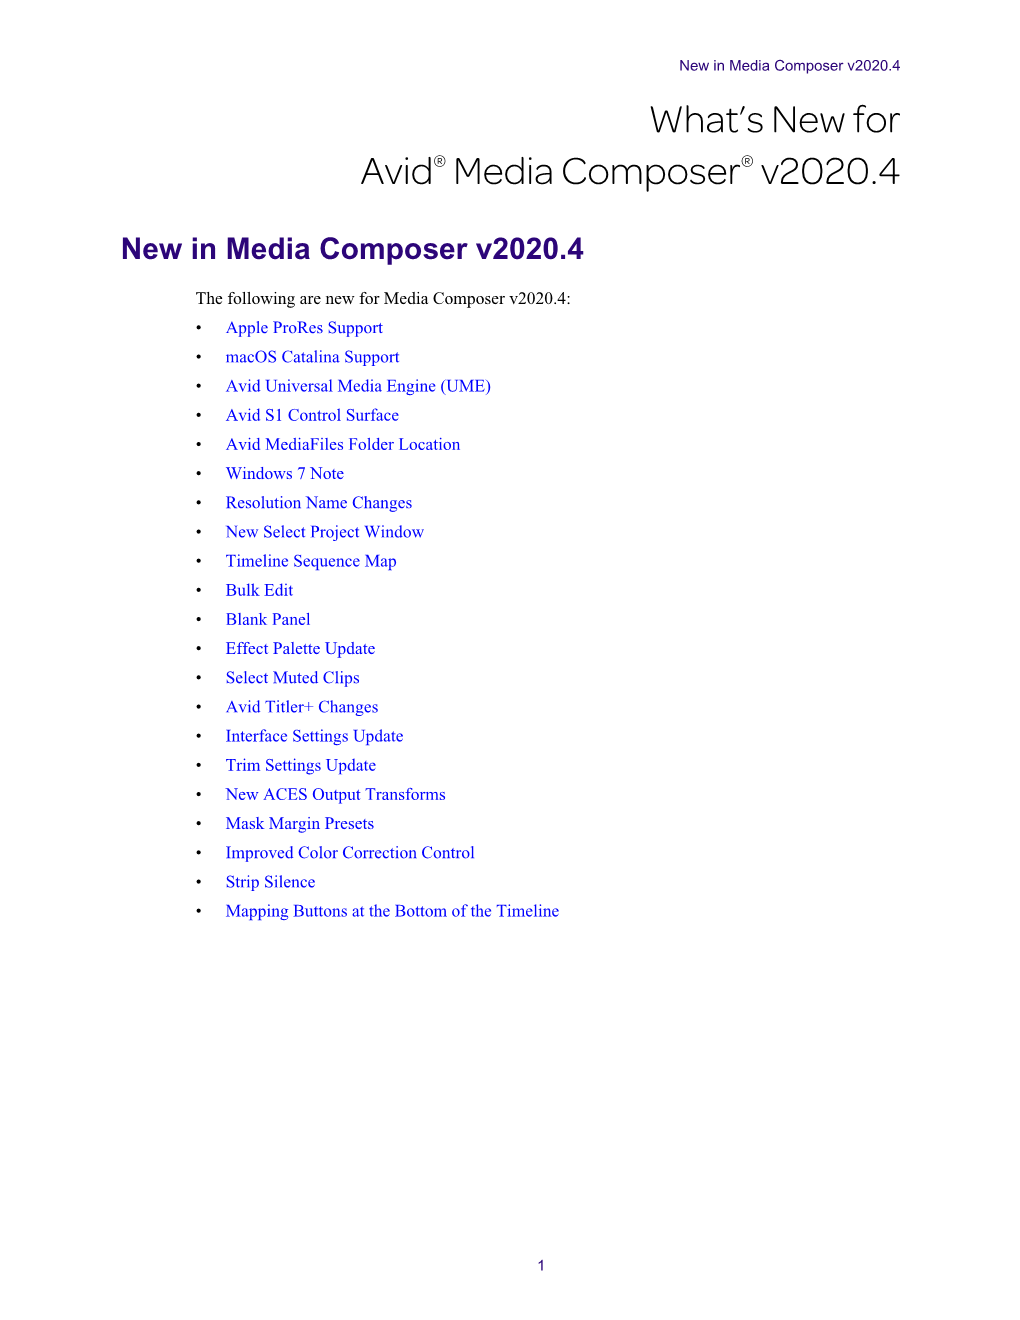 What's New for Avid® Media Composer® V2020.4